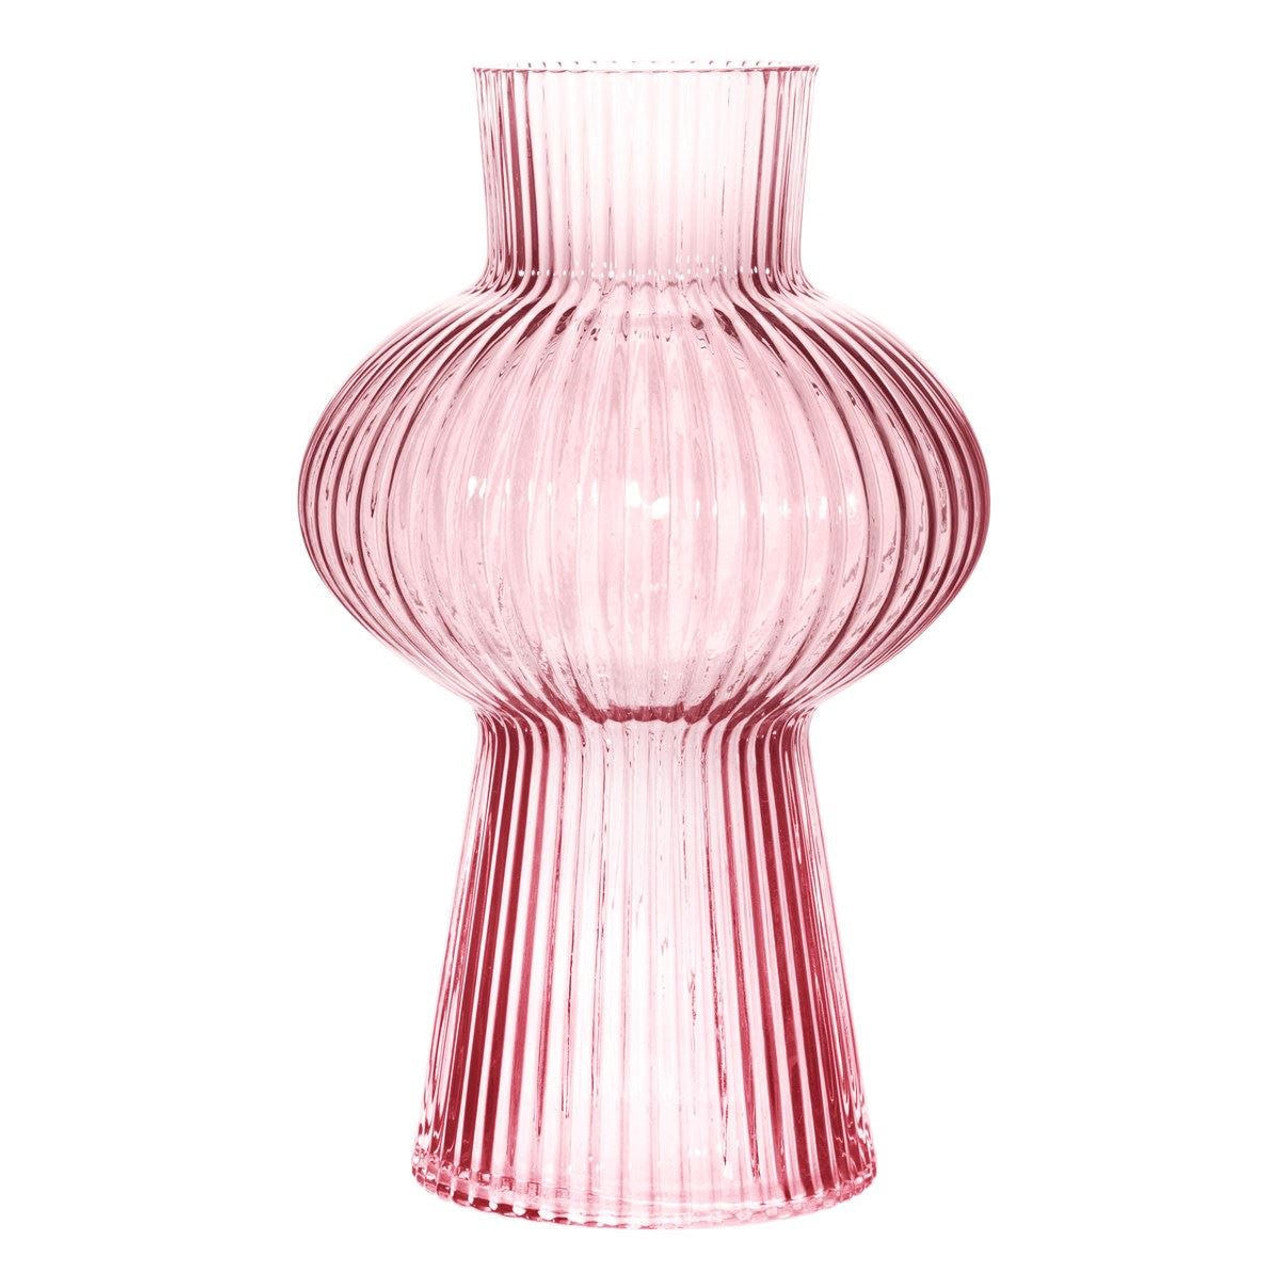 Sass & Belle pink fluted glass vase